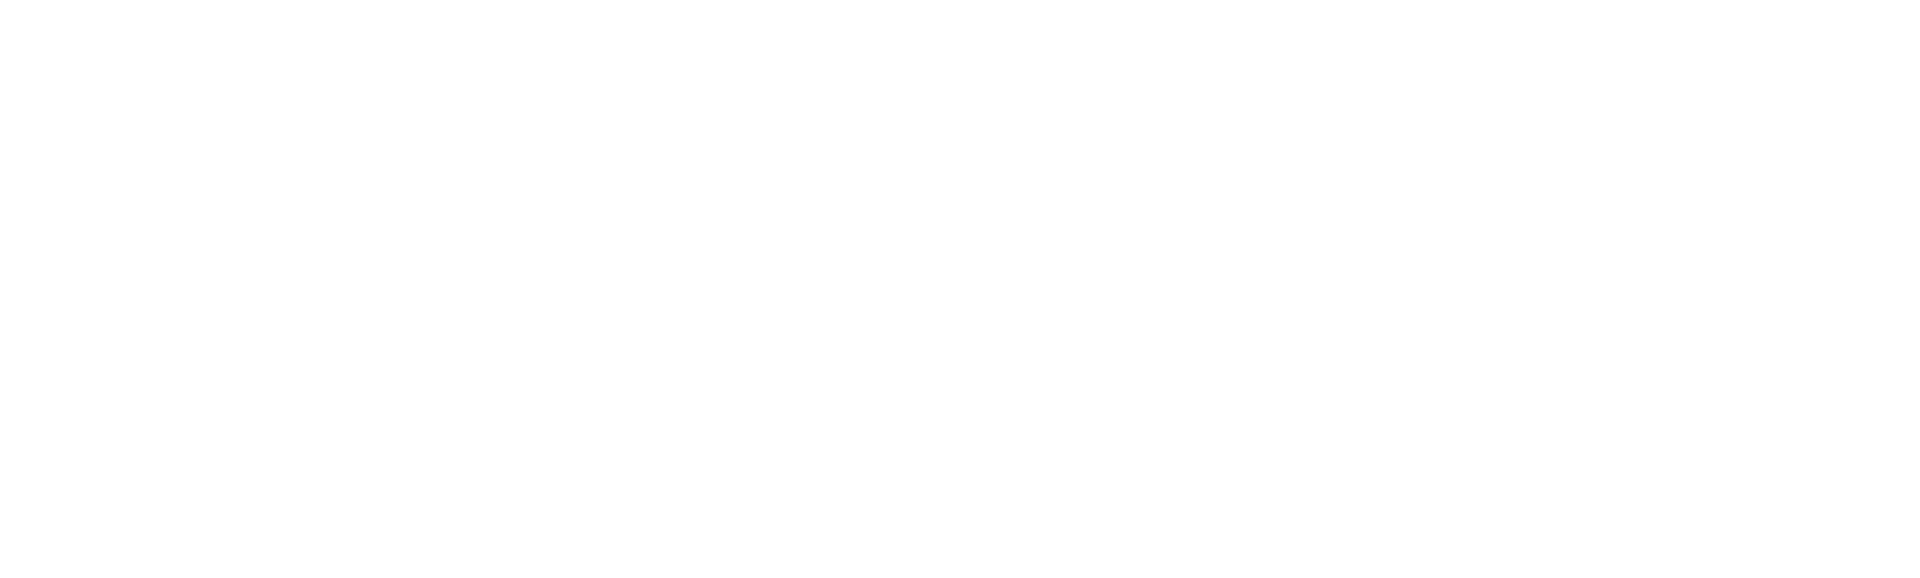 Ludewig.Team logo